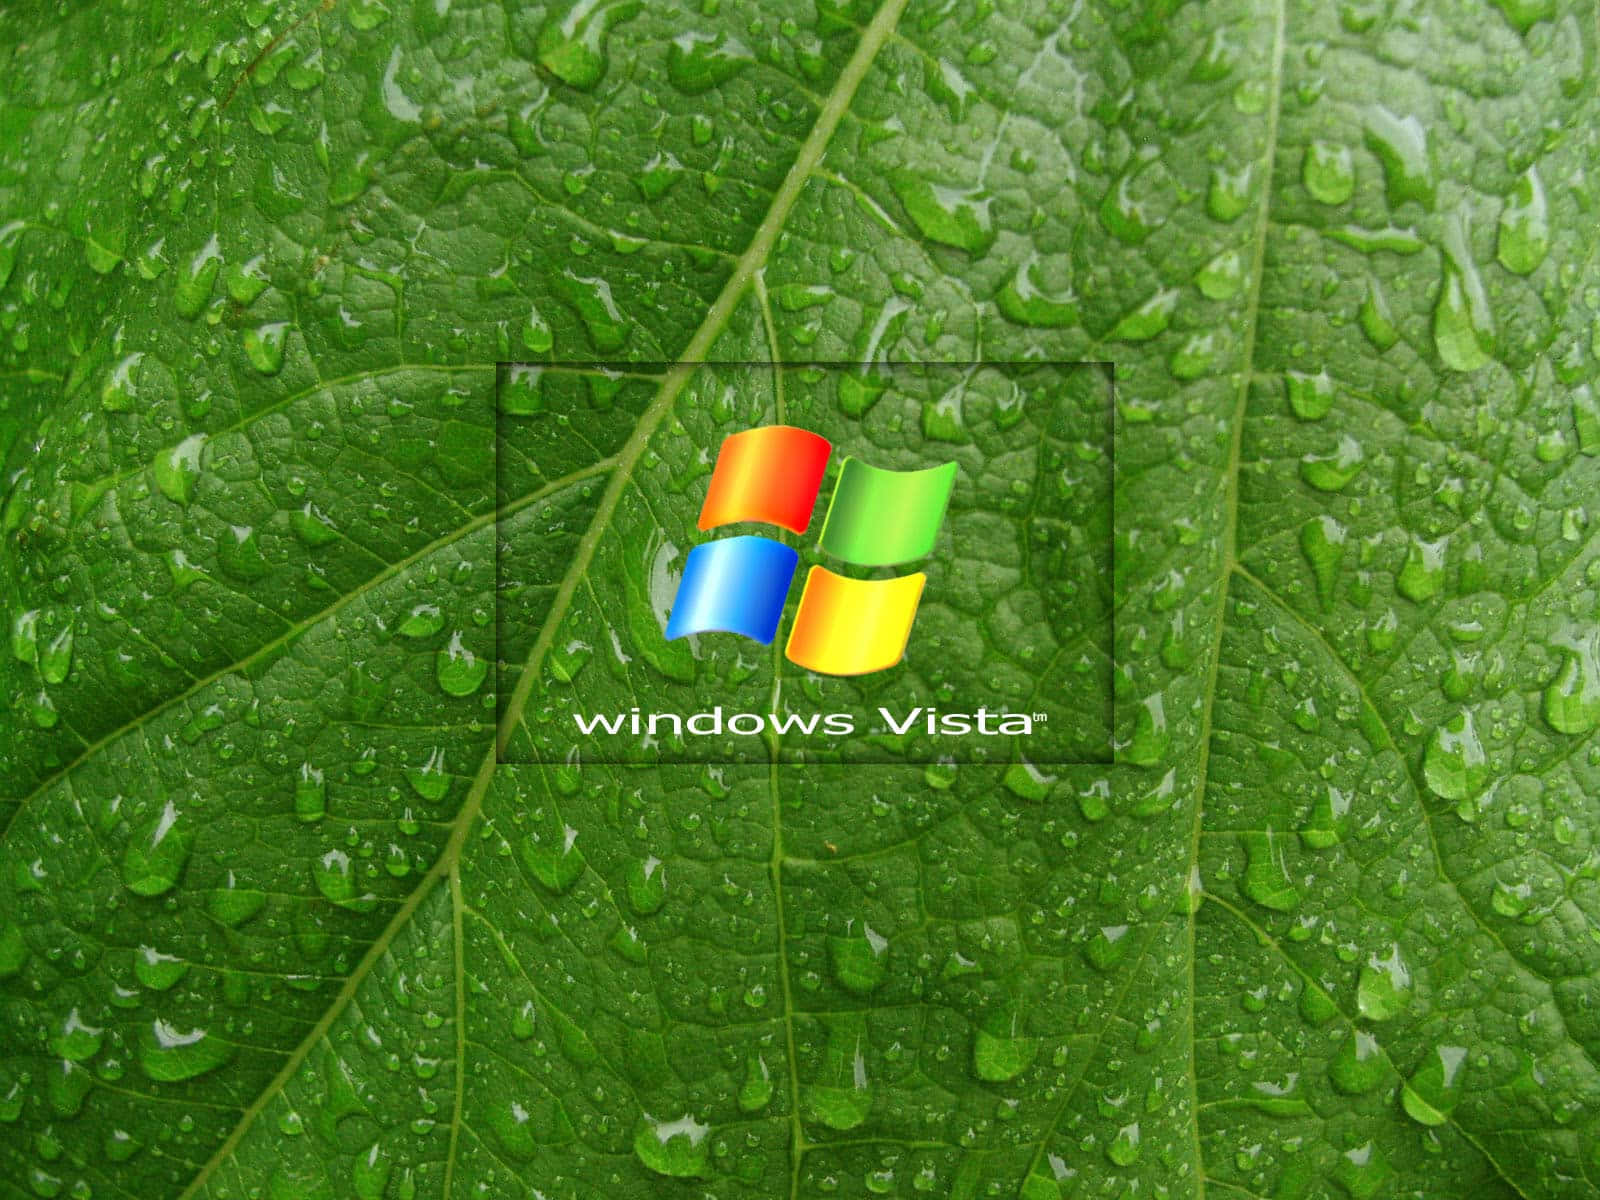 Windows Vista 1600 x 1200 High Resolution Landscape